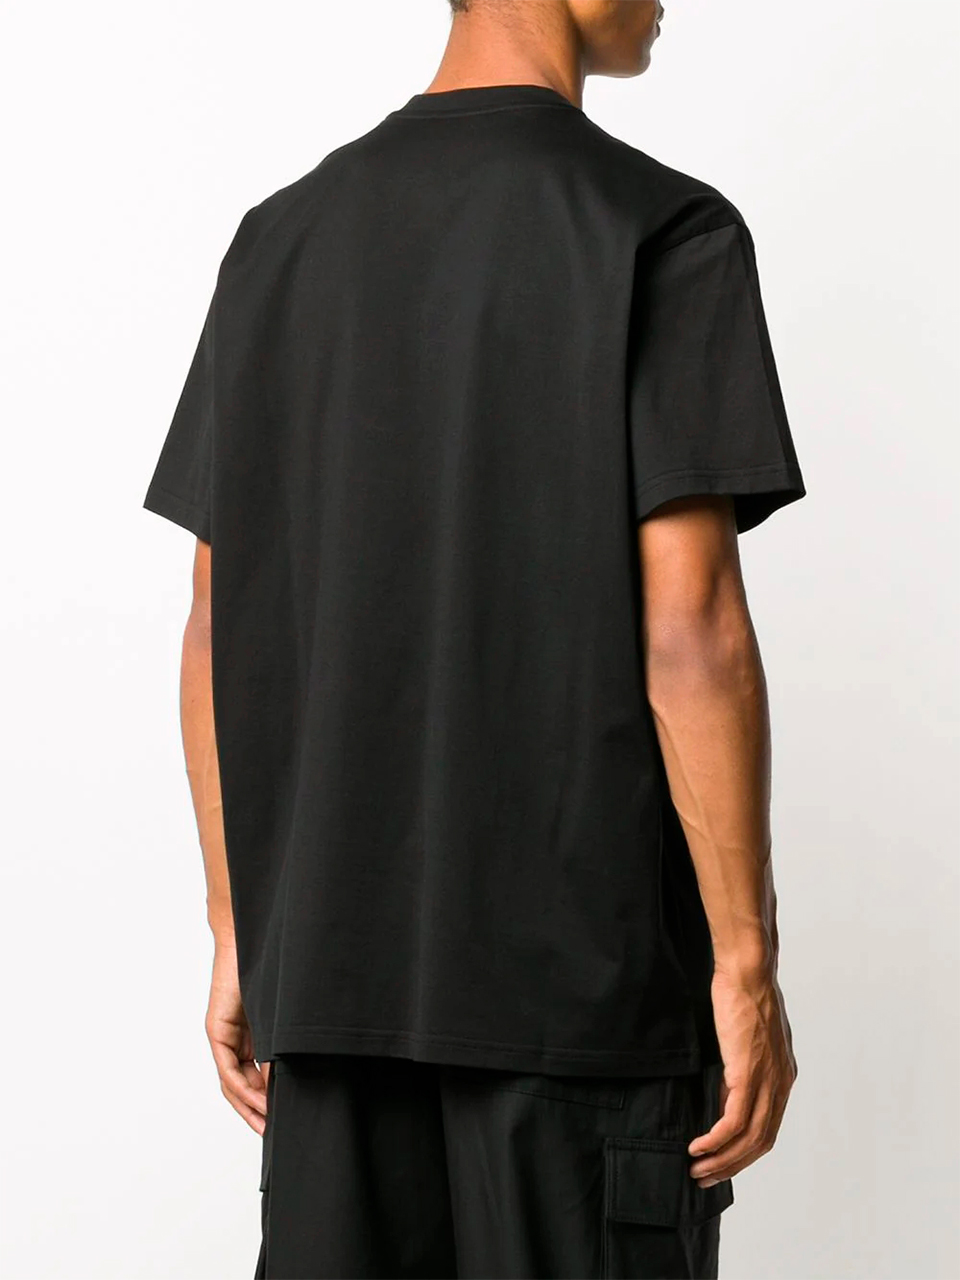 Imagem de: Camiseta Givenchy Preta com Logo Abstrato